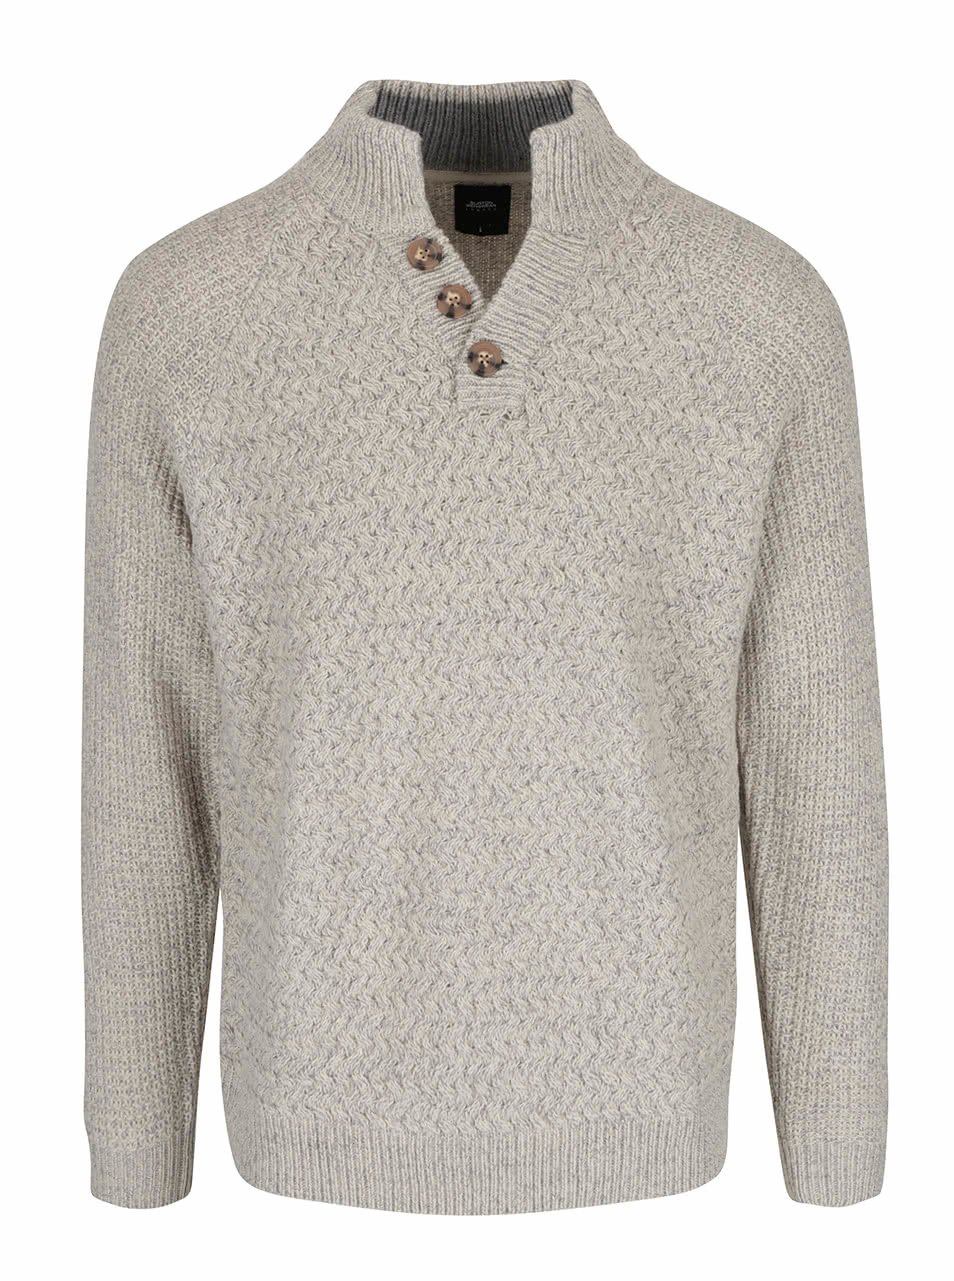 Šedo-krémový žíhaný svetr s knoflíky Burton Menswear London